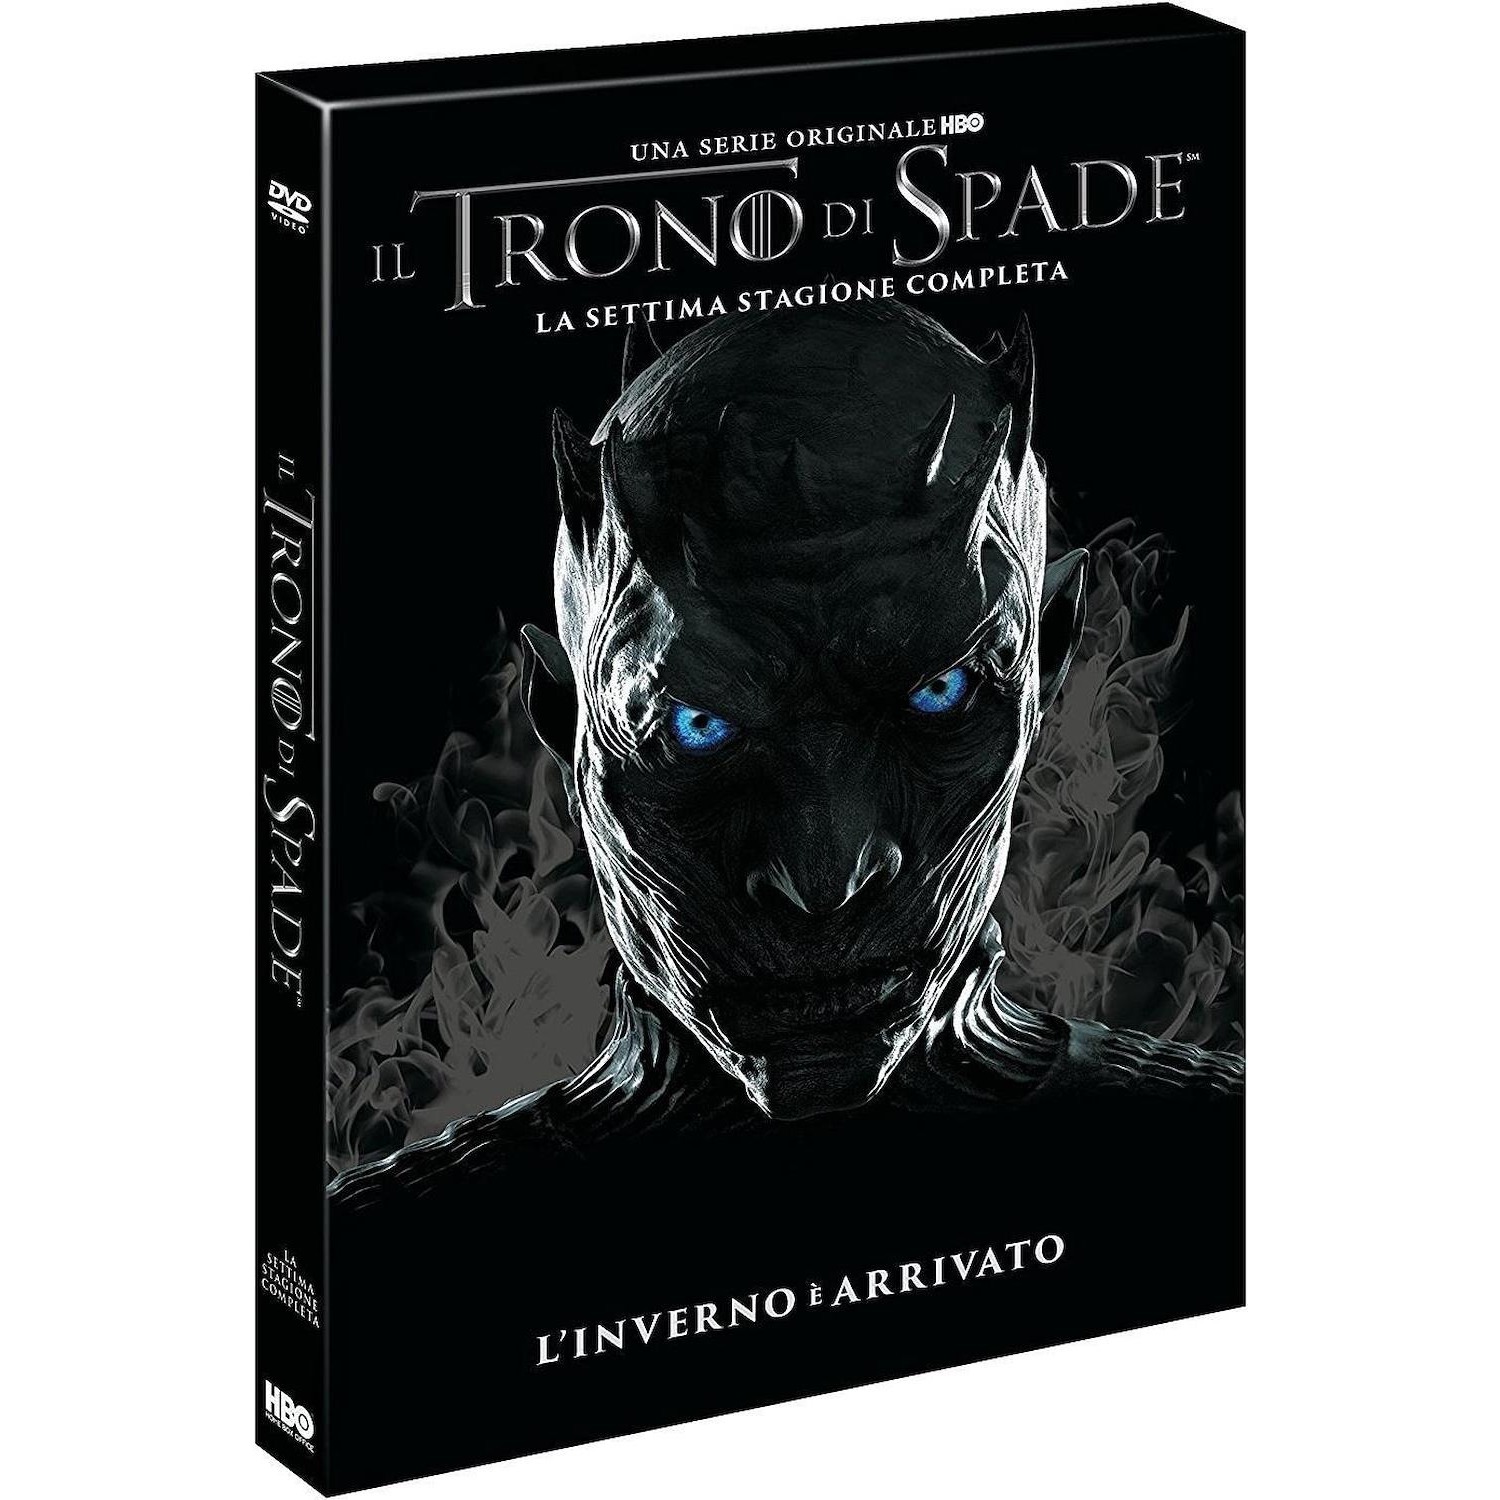 Immagine per Serie TV DVD Il Trono di Spade  stagione 7 new da DIMOStore